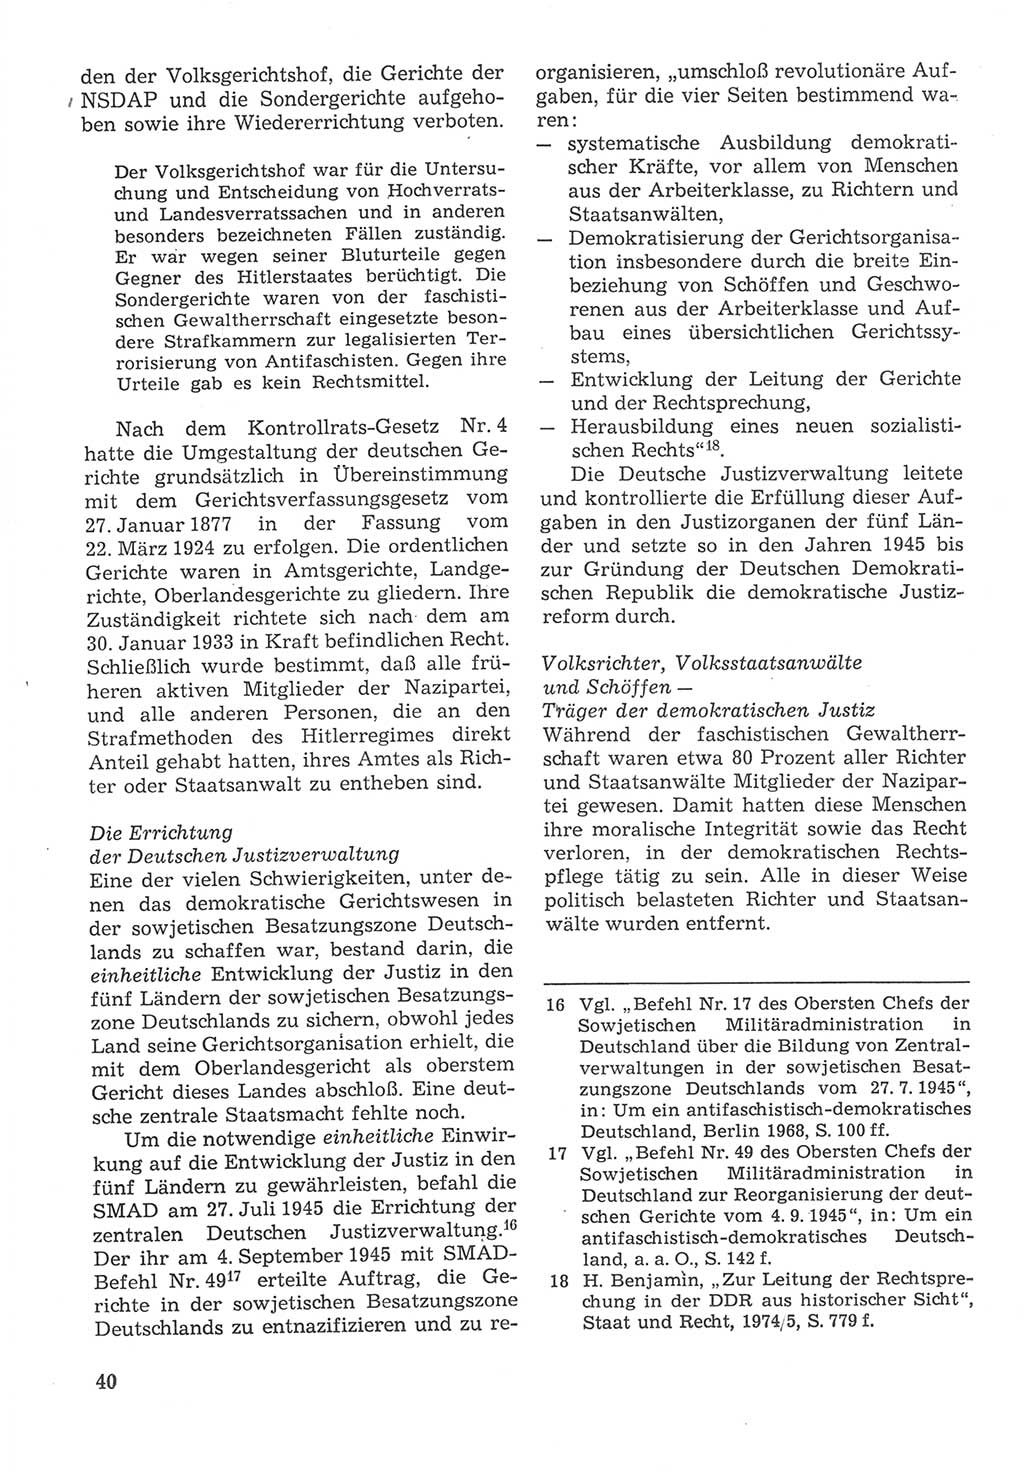 Strafverfahrensrecht [Deutsche Demokratische Republik (DDR)], Lehrbuch 1987, Seite 40 (Strafverf.-R. DDR Lb. 1987, S. 40)